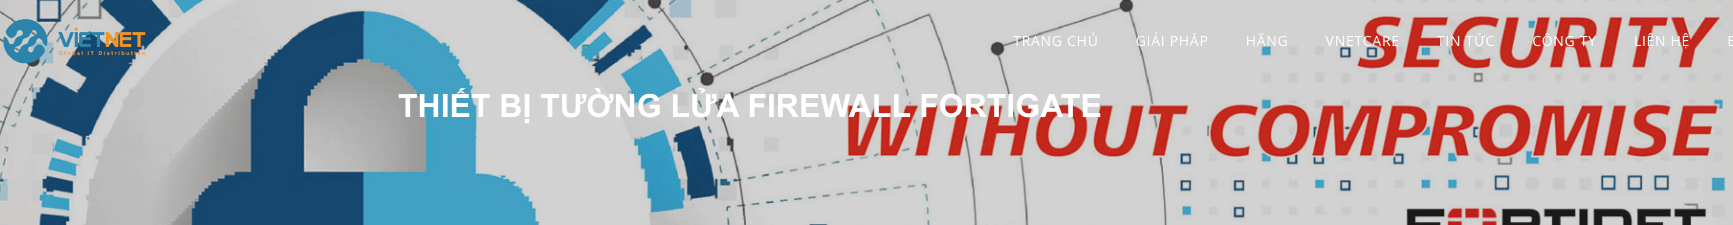 Thiết bị tường lửa Firewall Fortigate tường lửa chuyên dụng